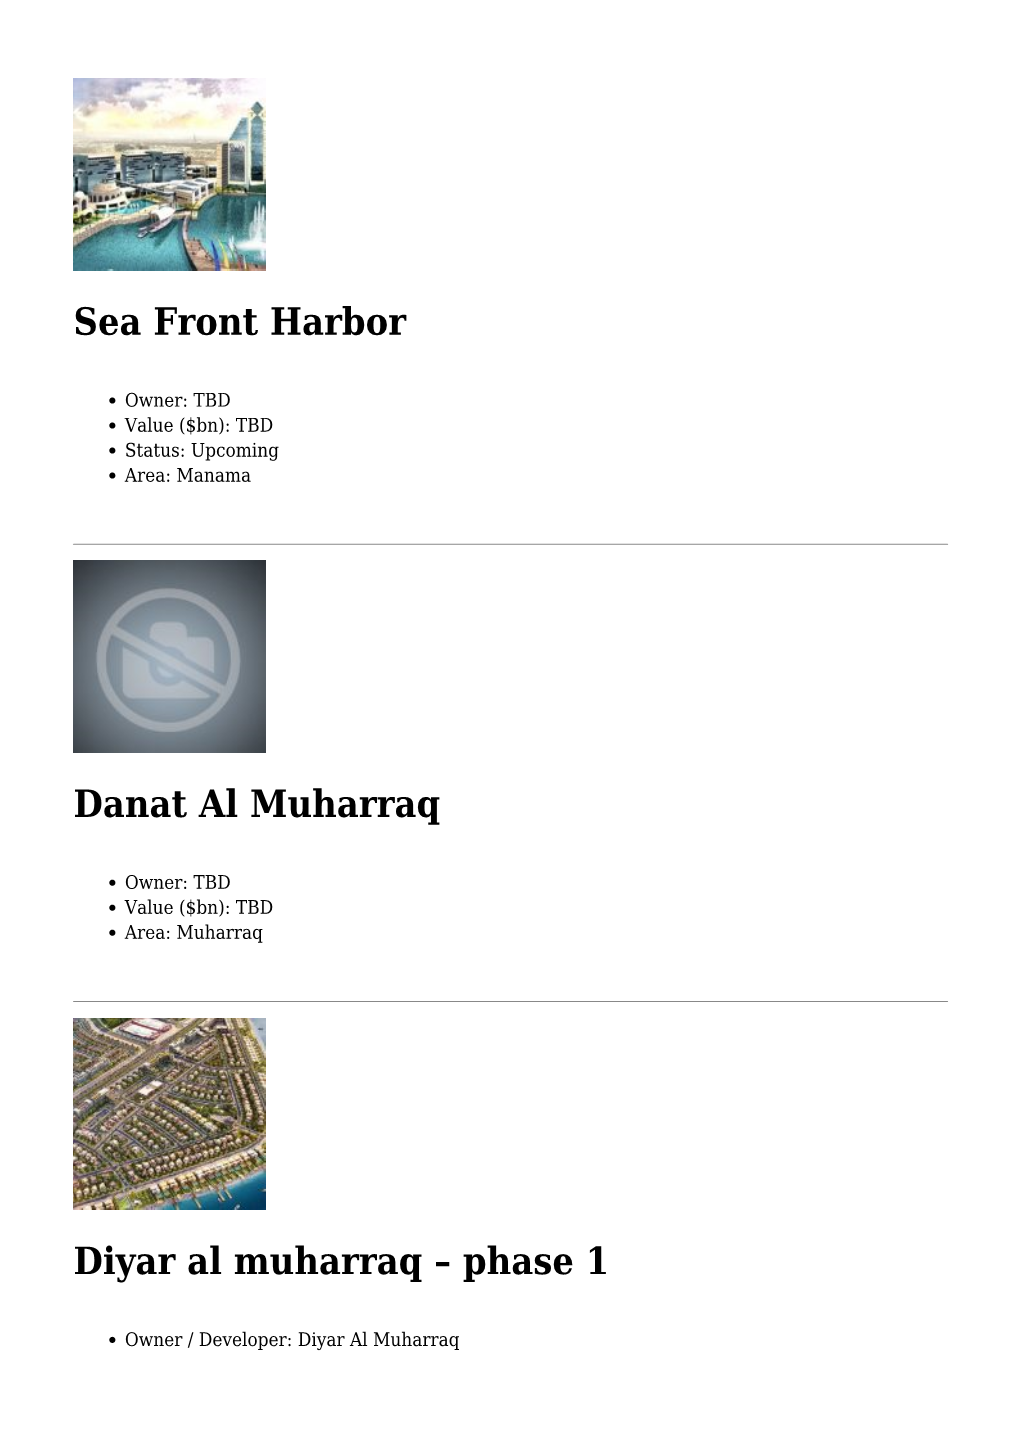 Sea Front Harbor,Danat Al Muharraq,Diyar Al Muharraq &#8211; Phase 1,Hasabi,Water Garden City,Bahrain Marina,Hawar Island To